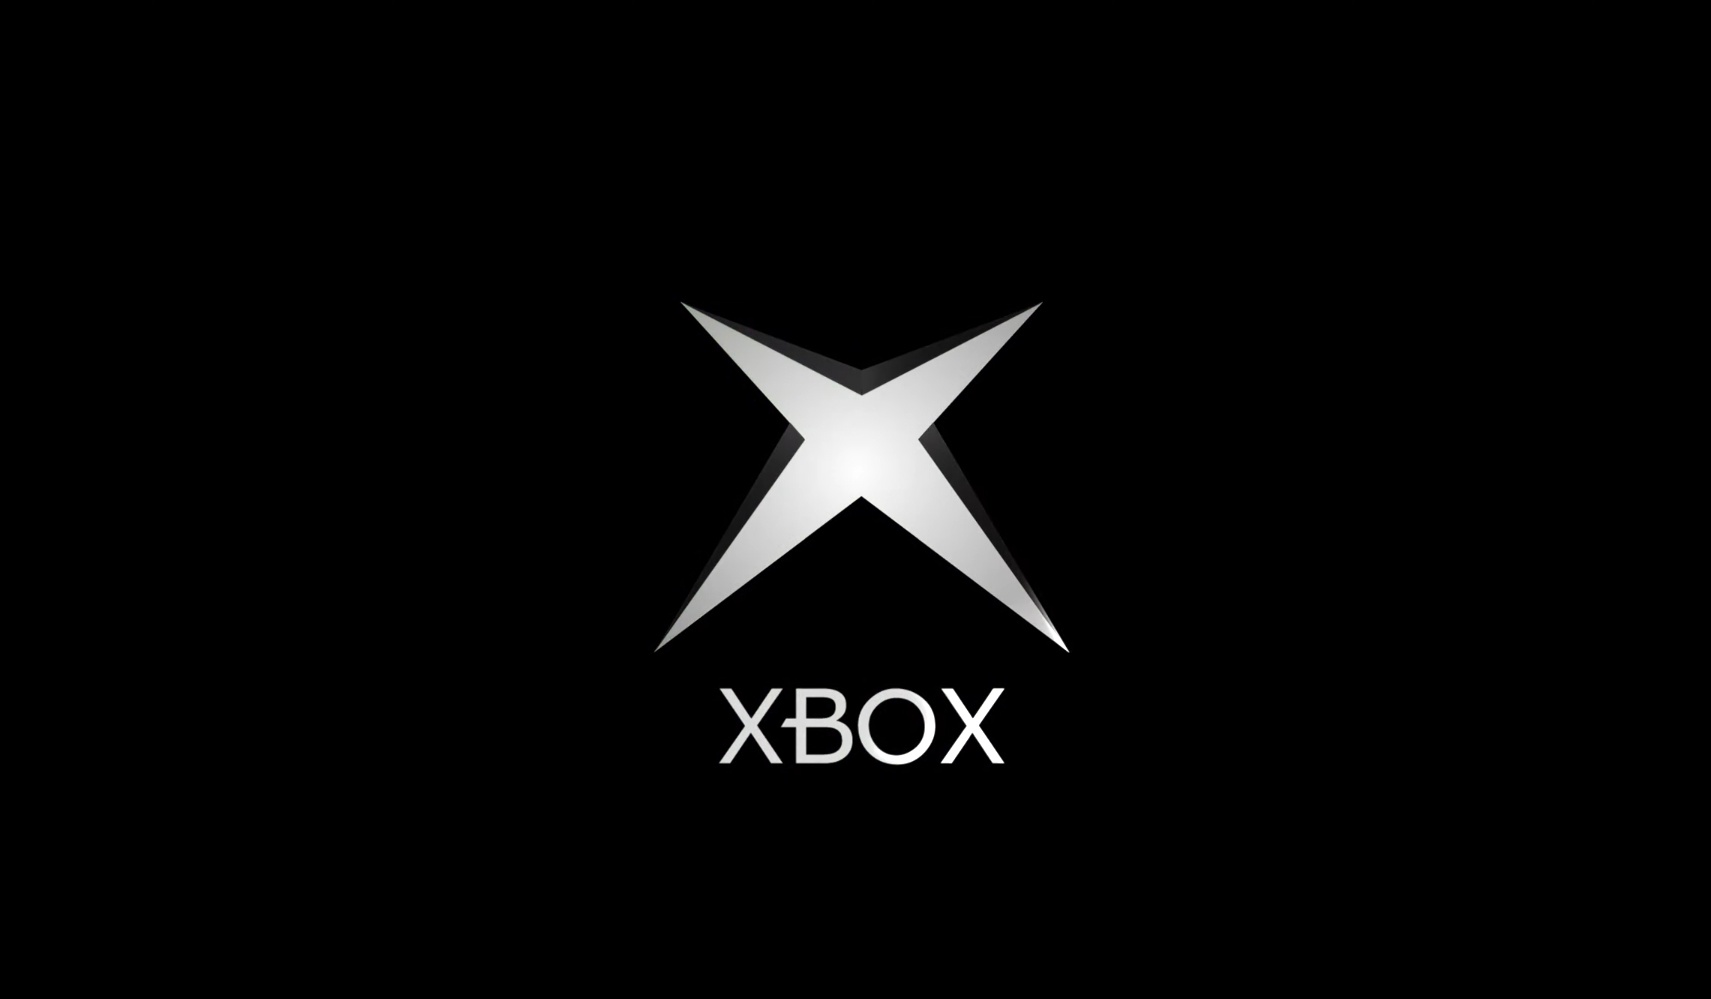 Дизайнер представил концепт обновленного интерфейса Xbox в стиле Blades